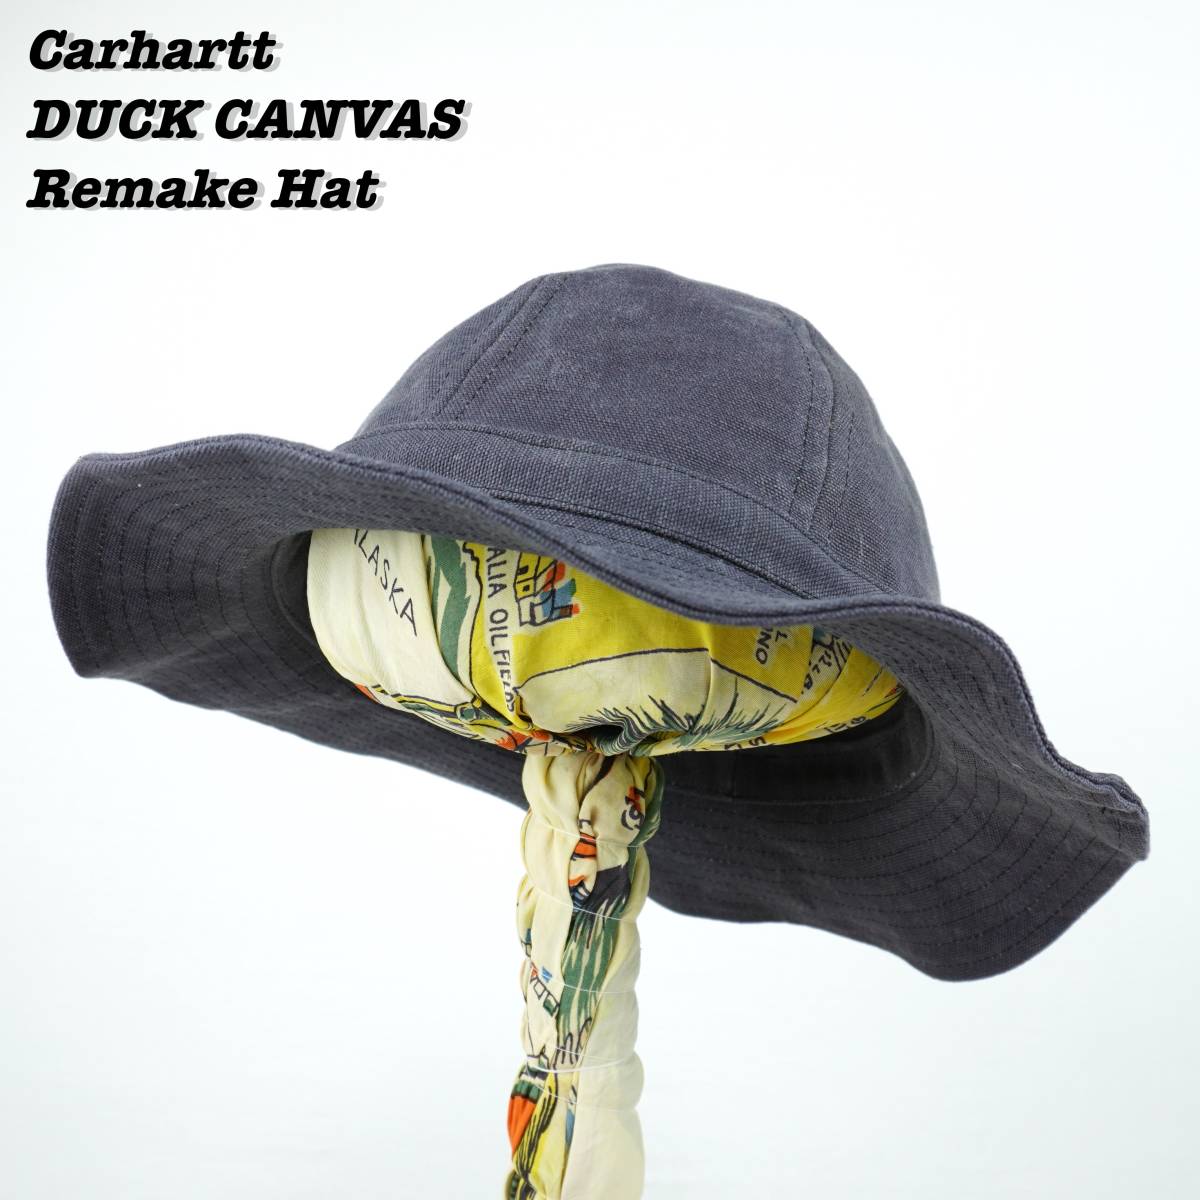 Carhartt Duck Canvas Remake Hat R079 カーハート ダックキャンバス